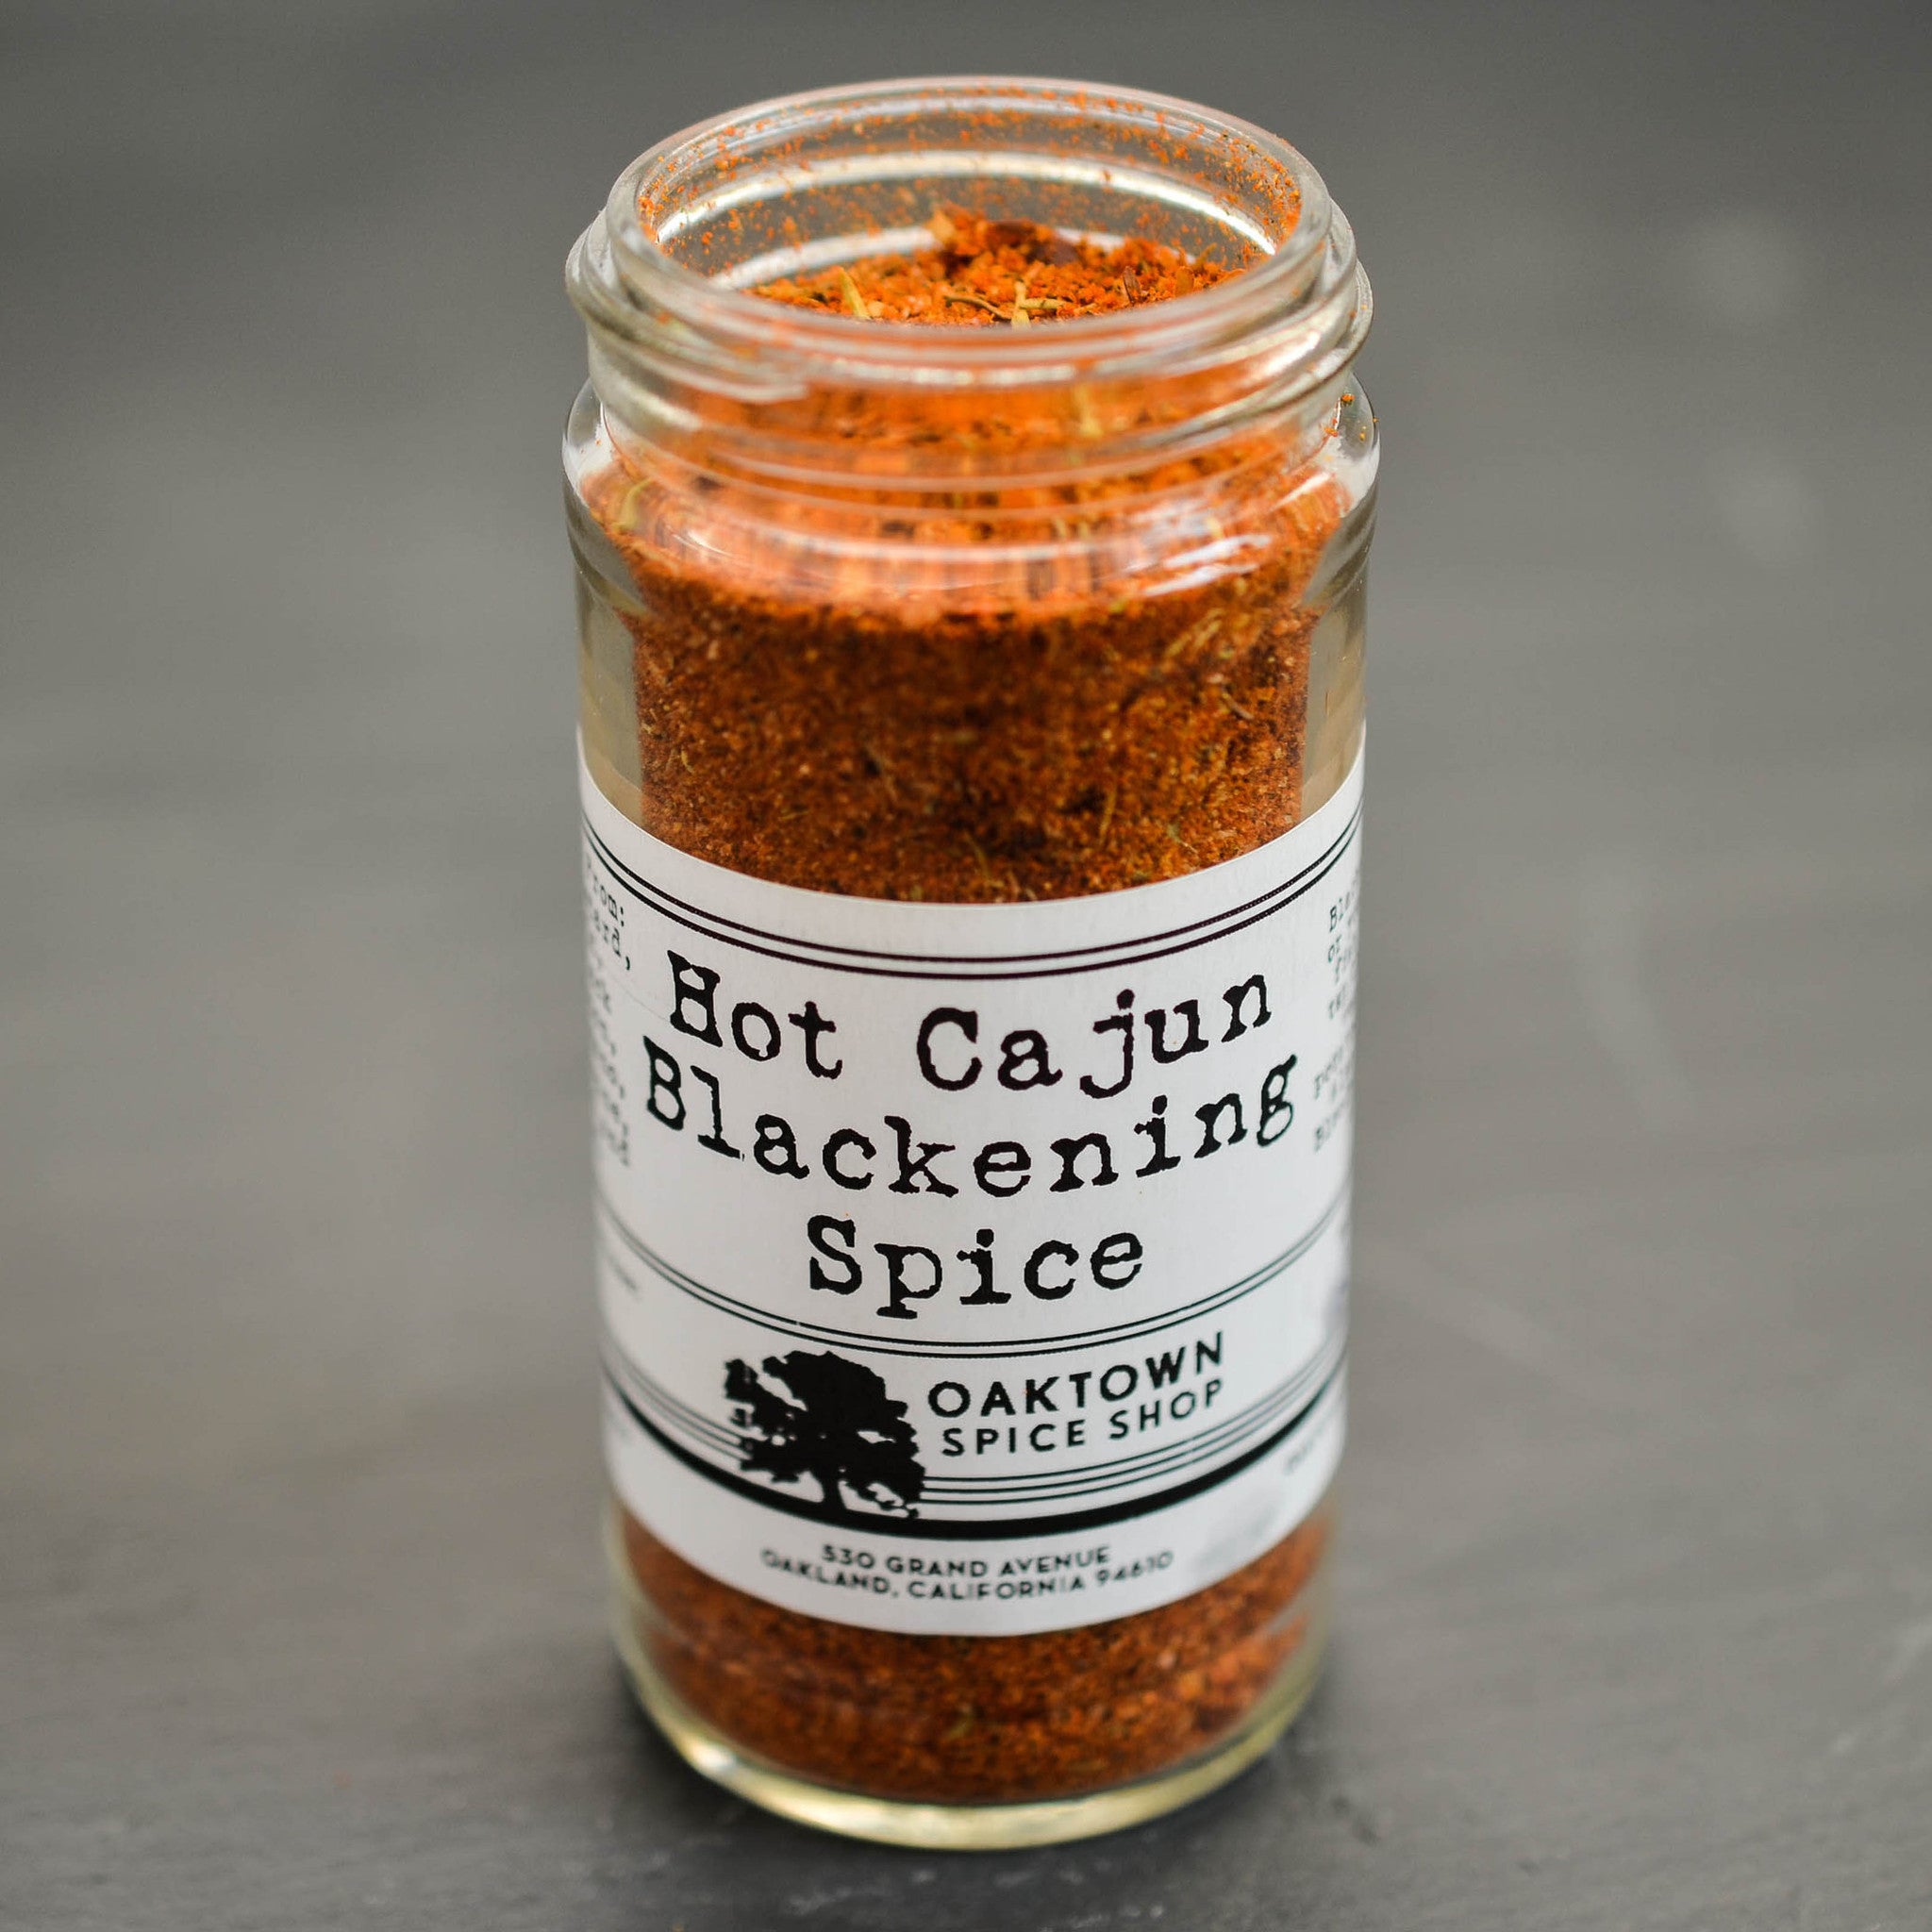 Hot Cajun Blackening Seasoning